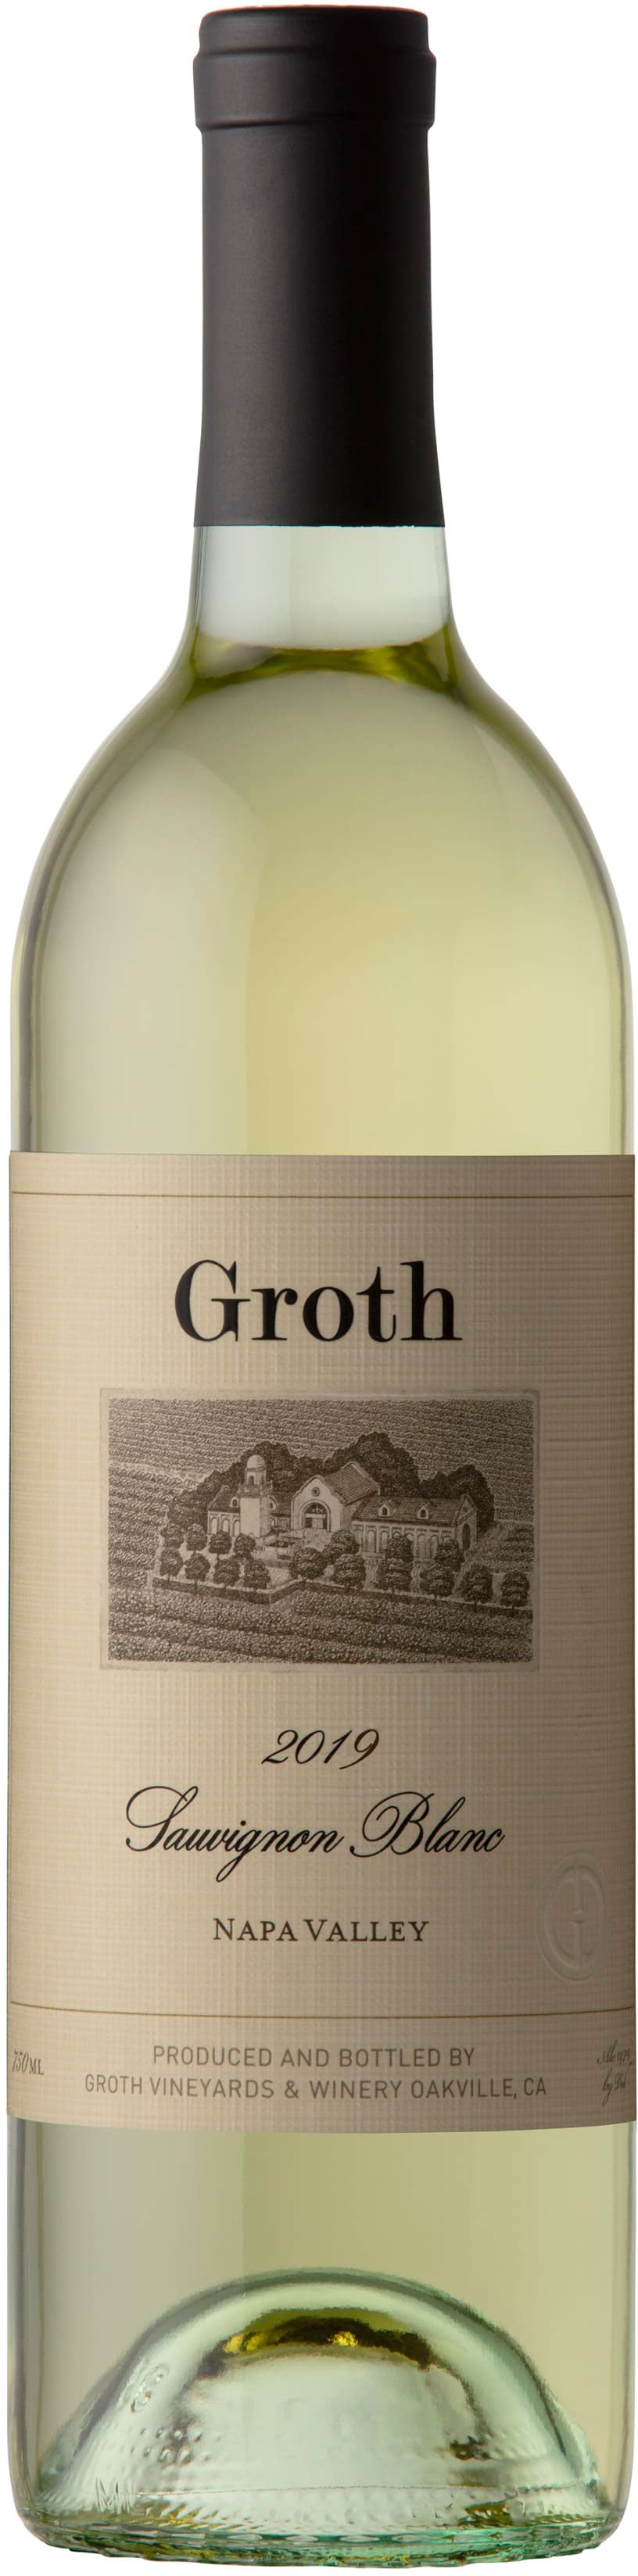 Groth Sauvignon Blanc 2019